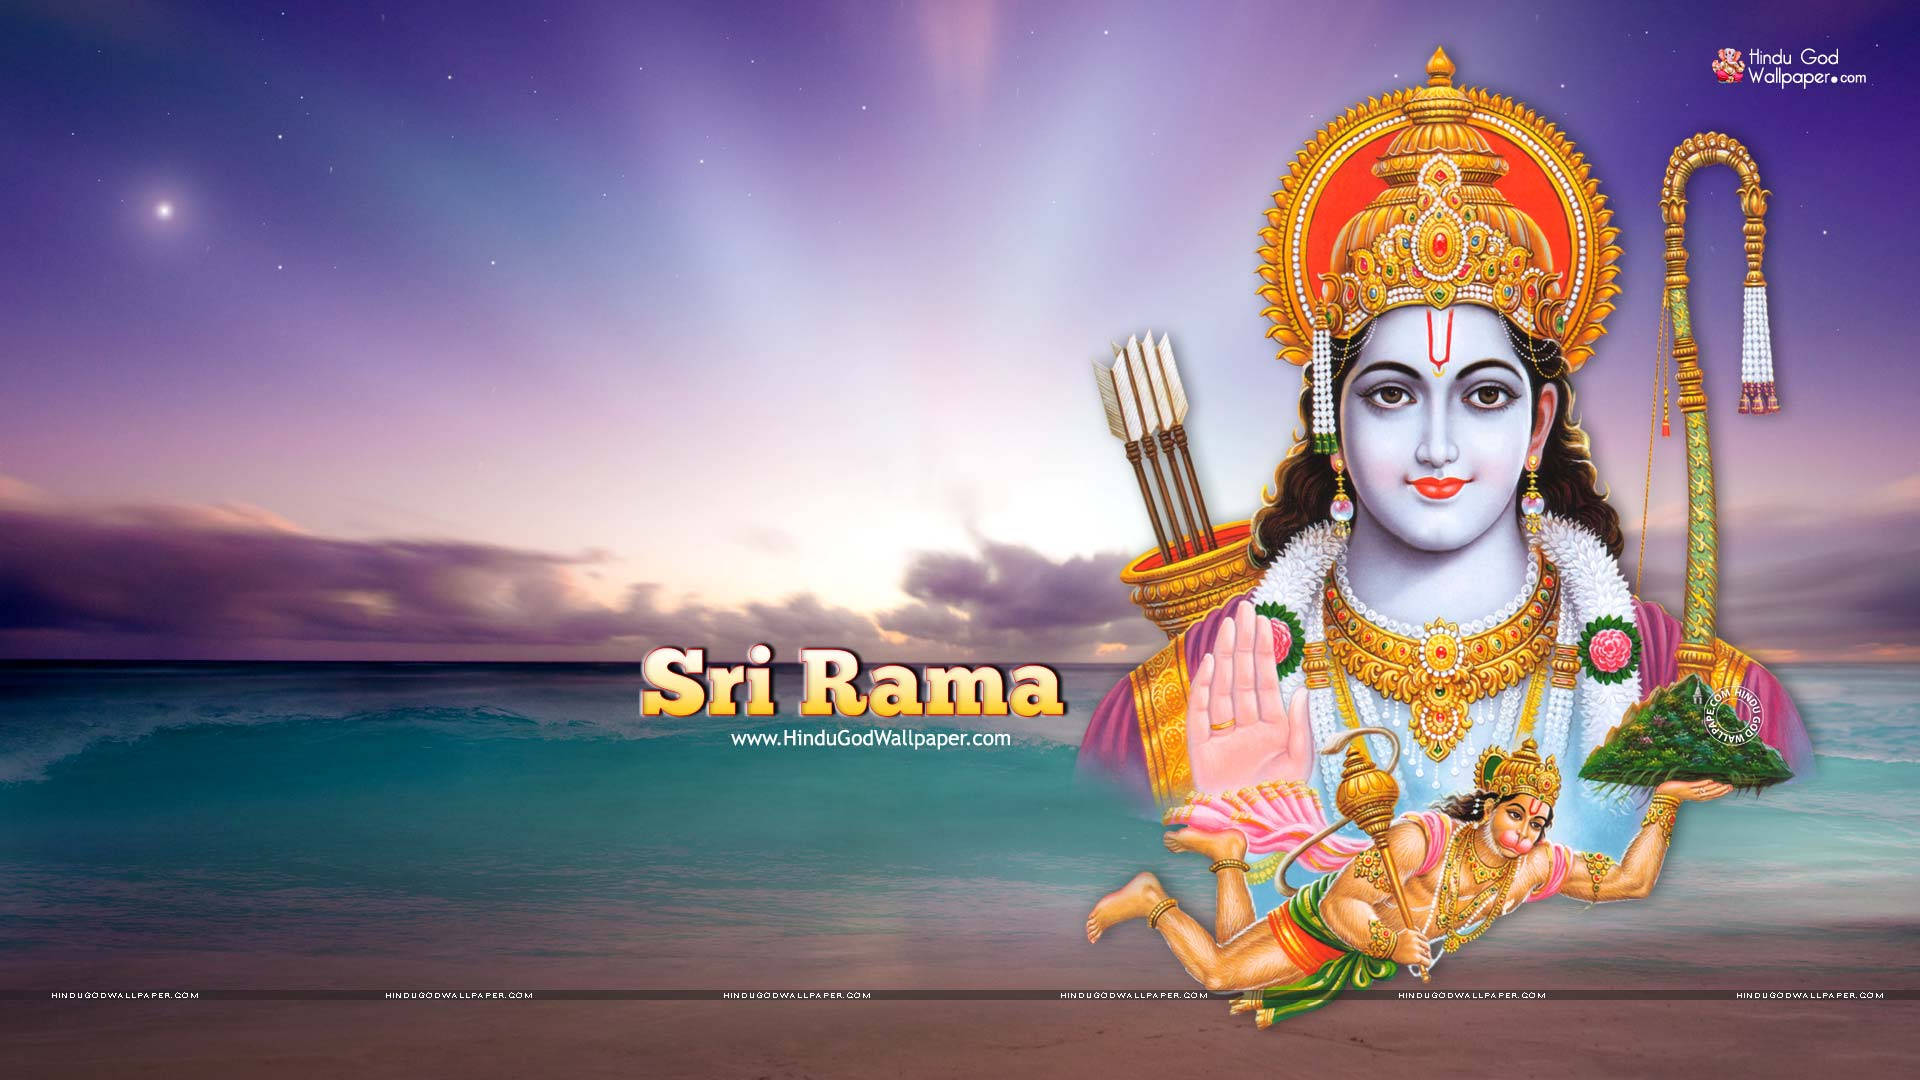 Hindu God Ram Ji Beach